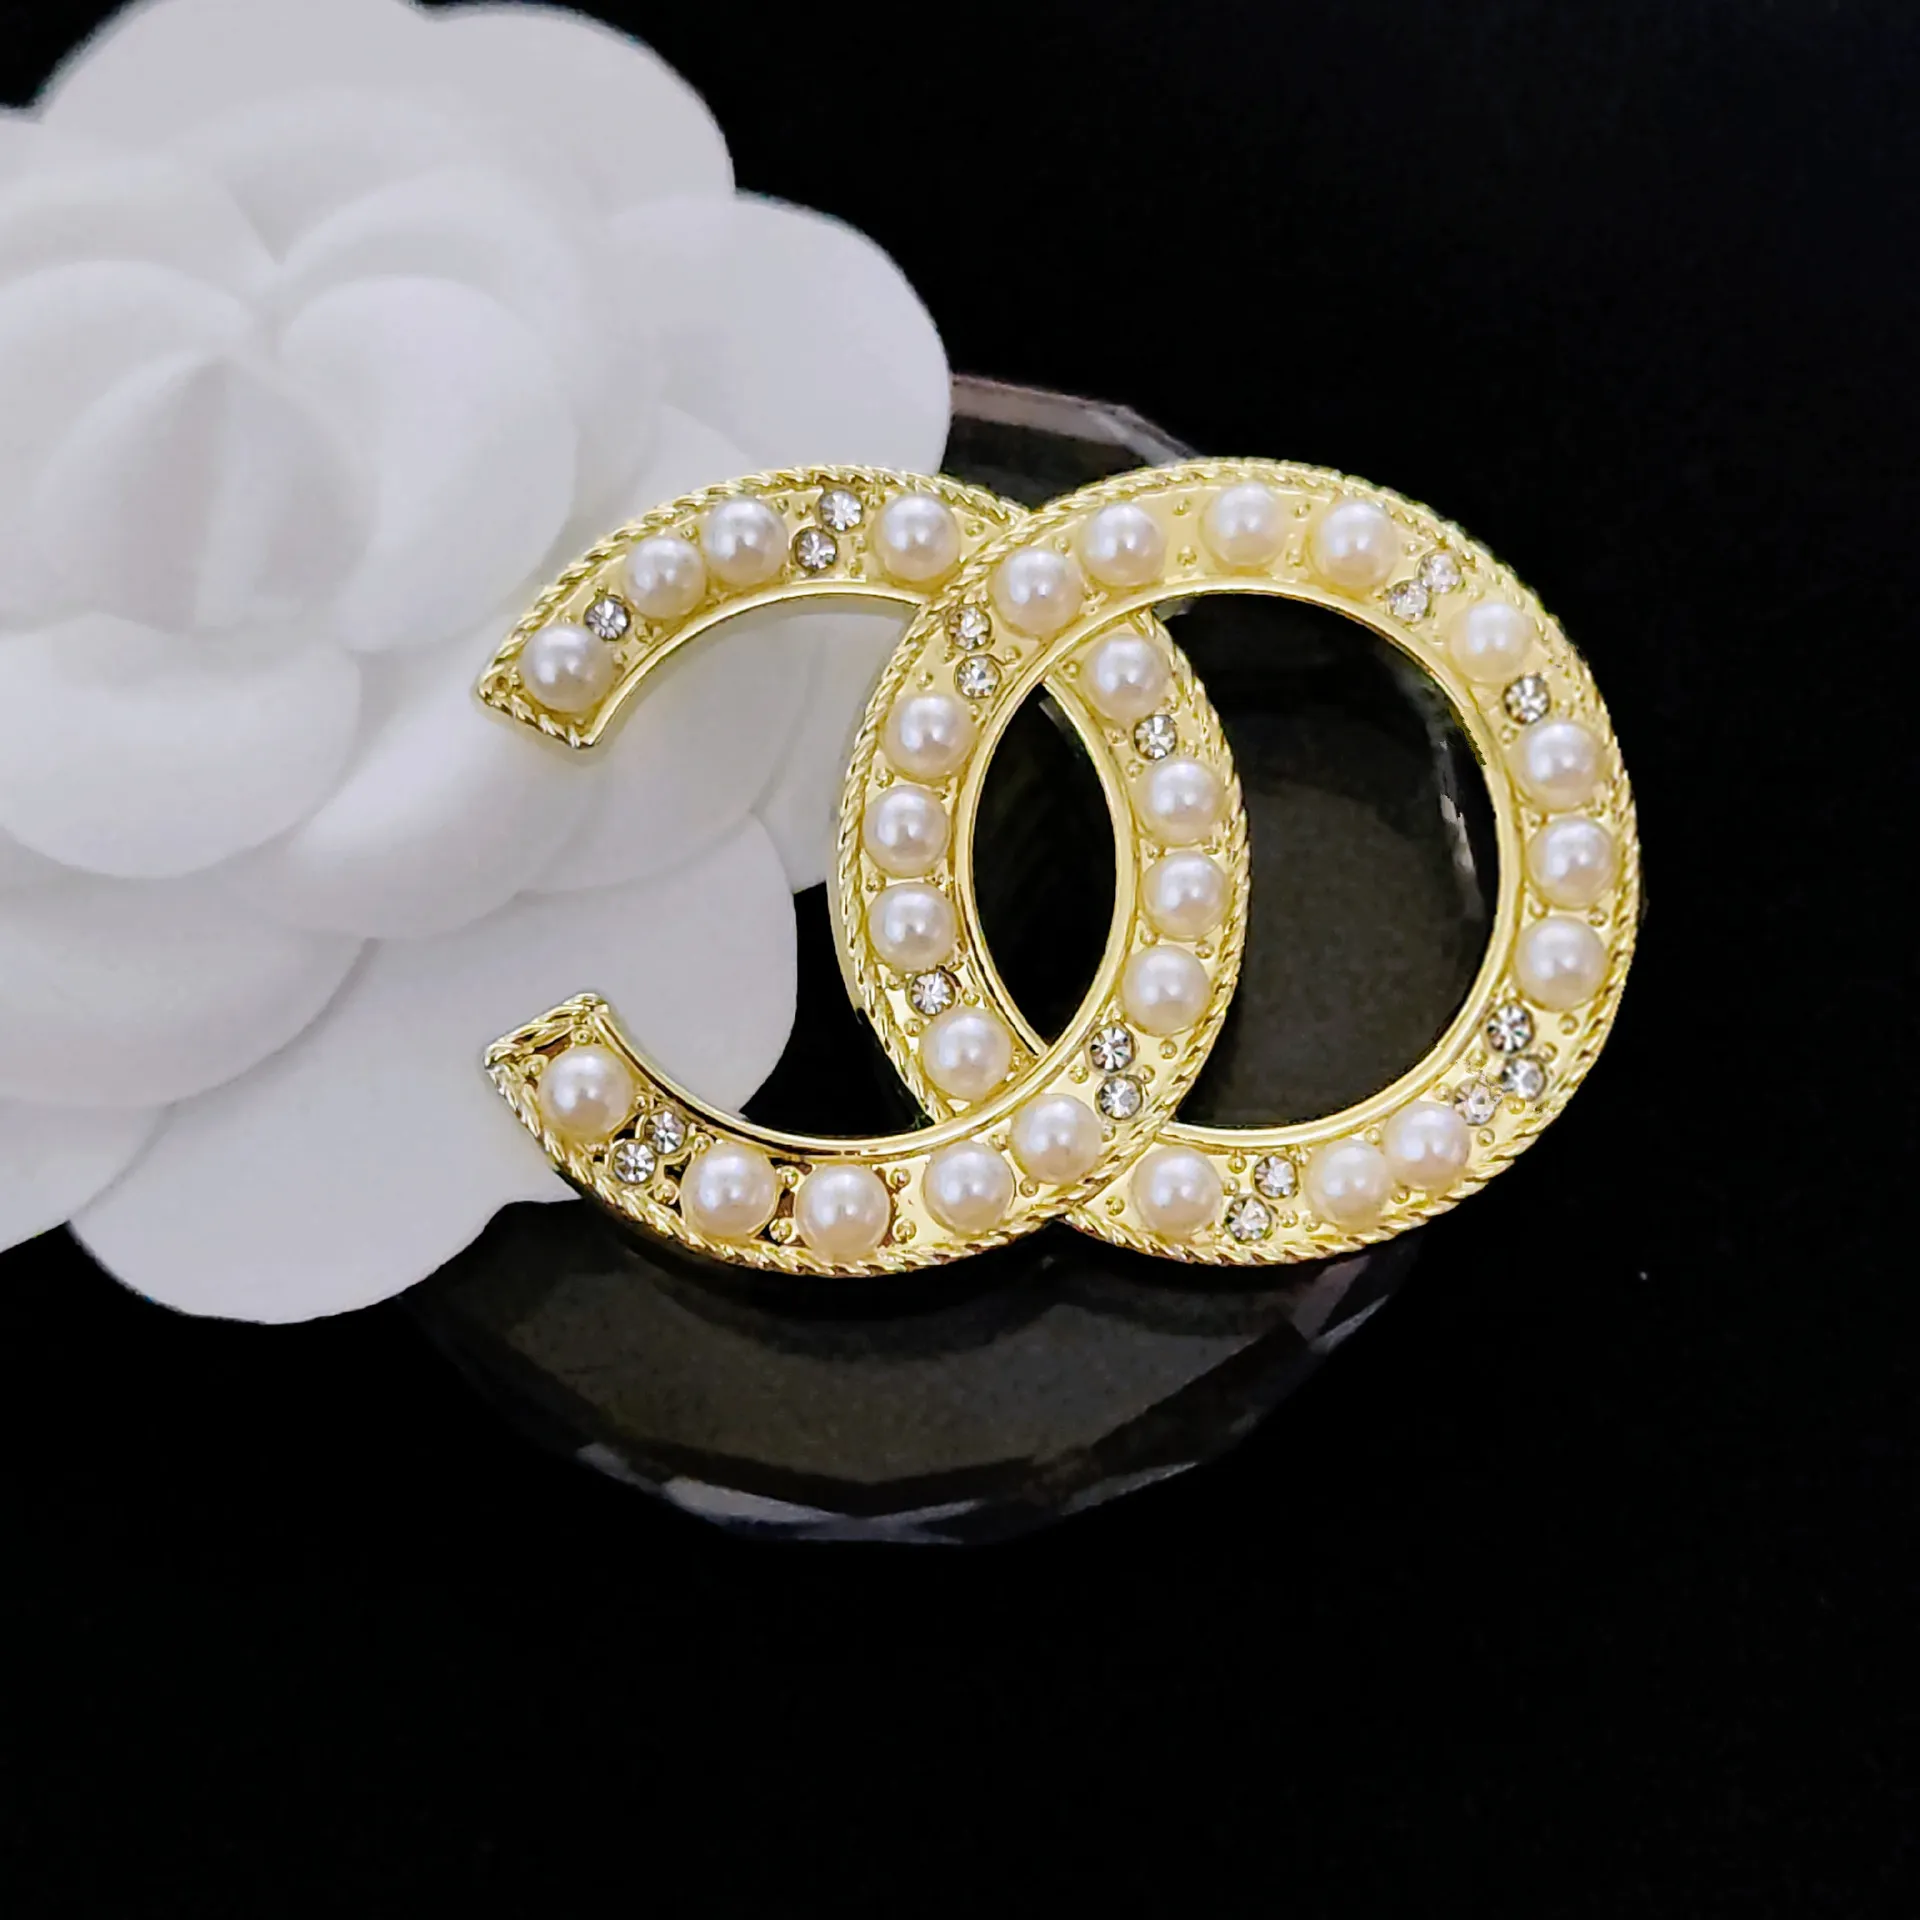 20 Style Vintage Brand Desinger brosch lyx kvinnor broscher kostym stift smycken tillbehör gifter sig bröllopsfest gåva